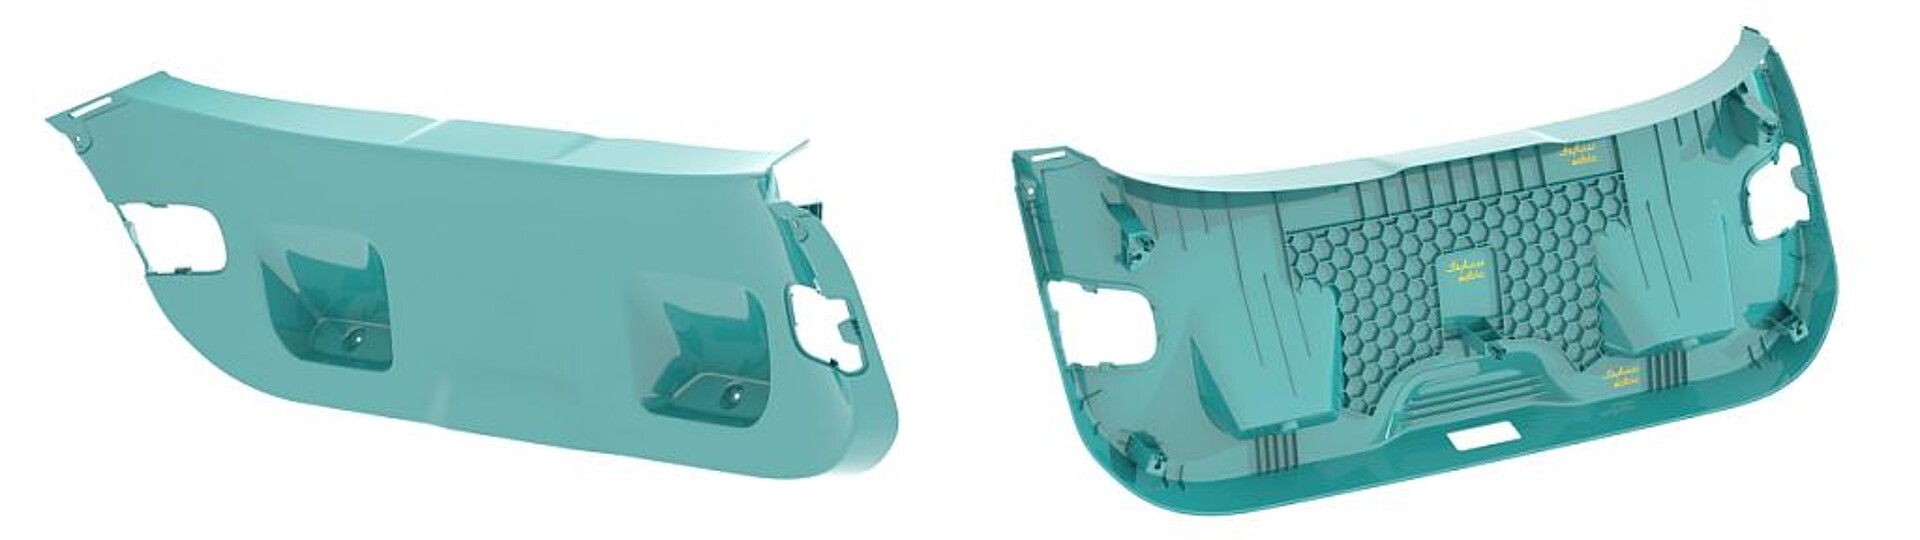 Sichtoberfläche (l.) und Innenkonstruktion (r.) einer schaumspritzgegossenen inneren Heckverkleidung aus PPc F9005. (Abb.: Sabic)